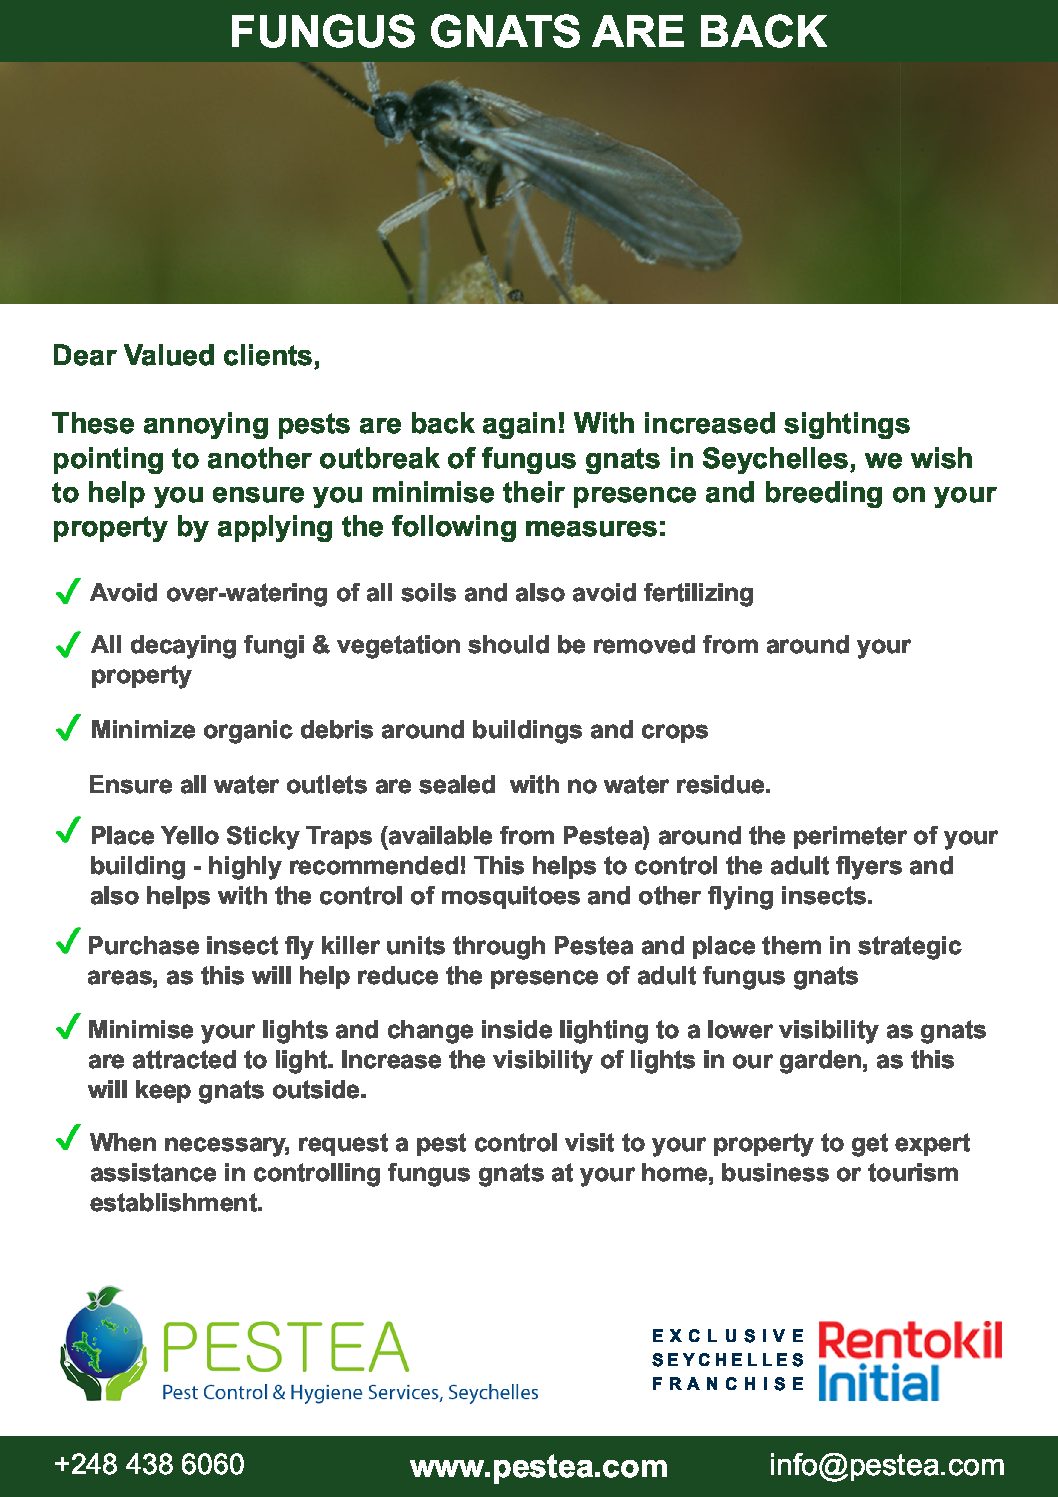 Download Fungus Gnat Control Checklist